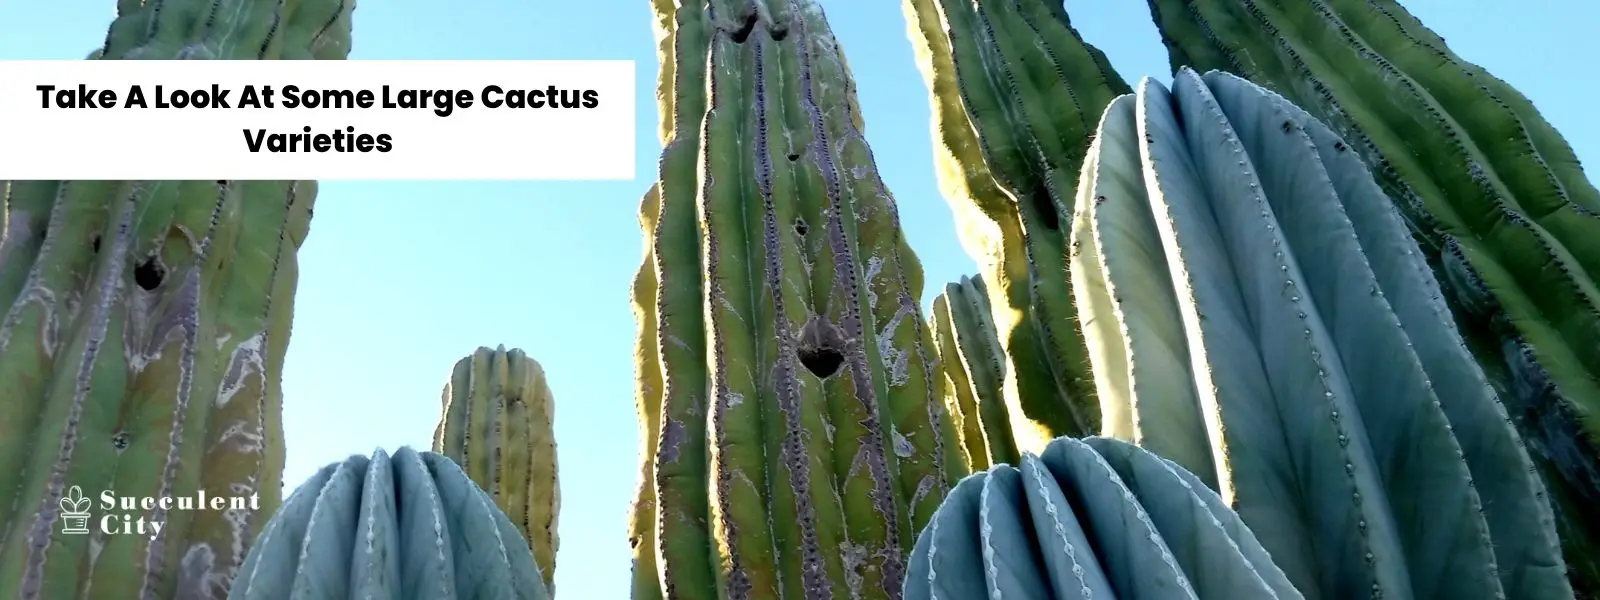 Echa un vistazo a estos 10 cactus de gran tamaño